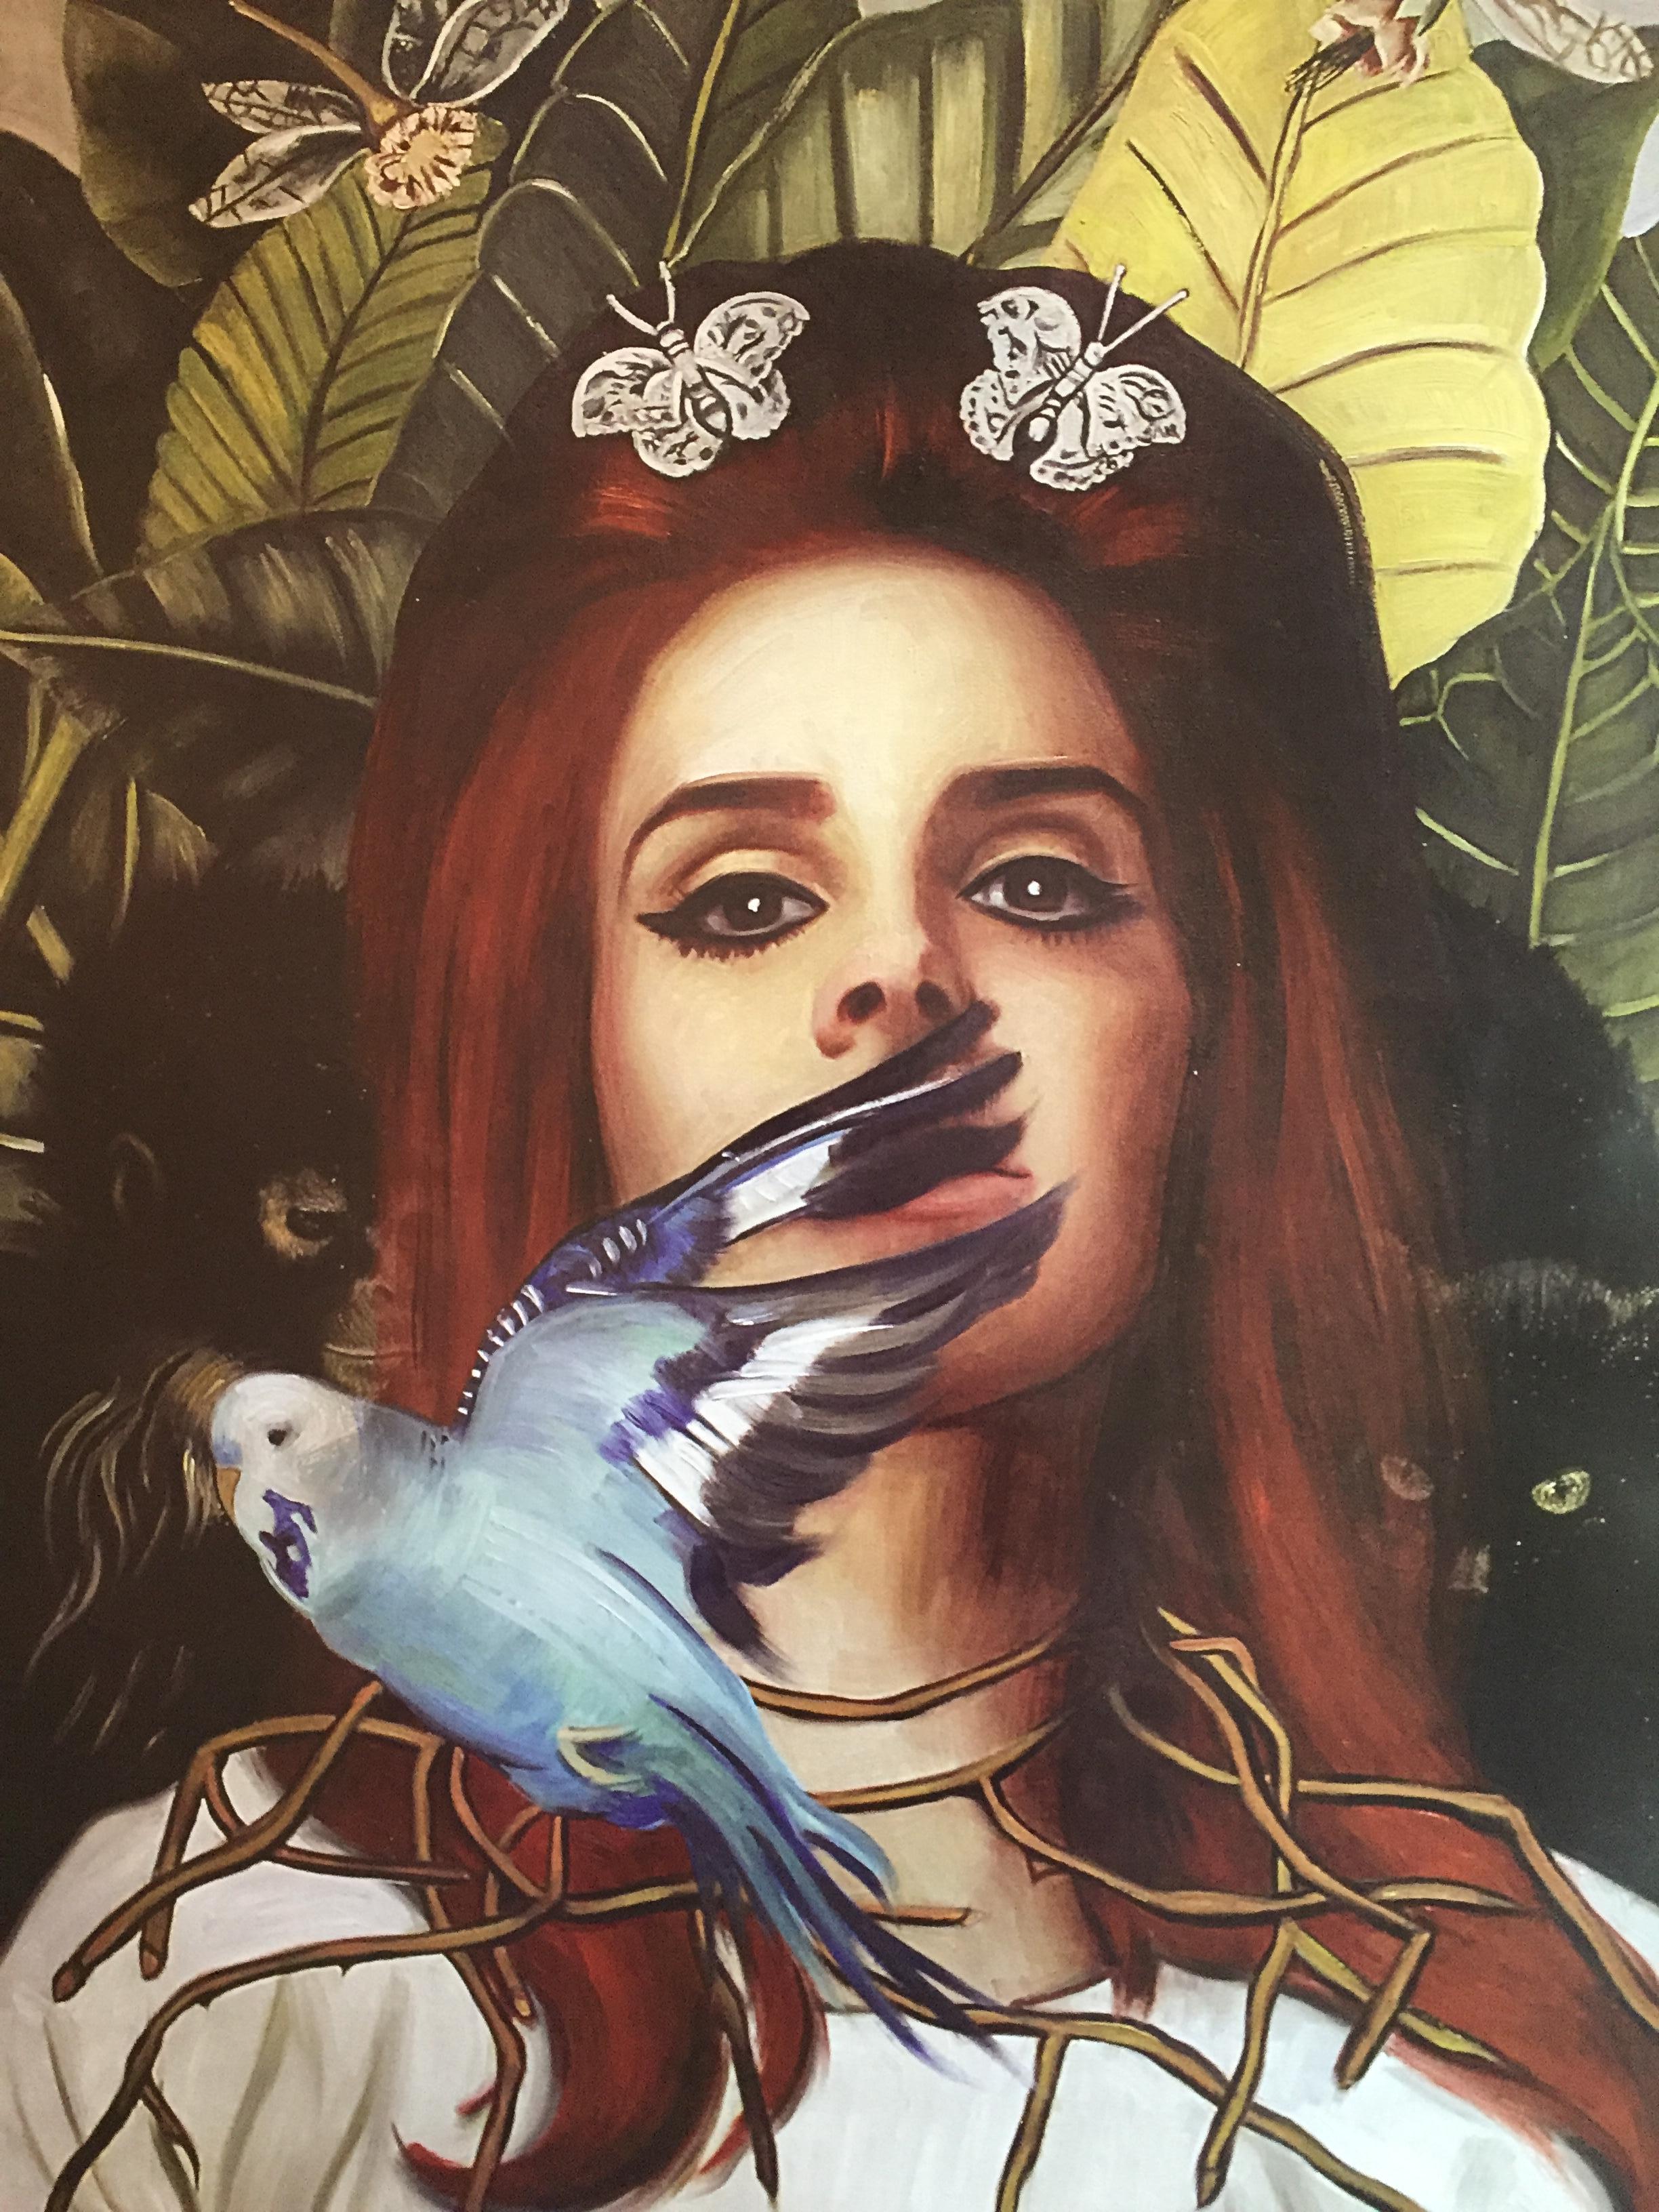 Mr. Brainwash "Lady in the Gardern" 2014 Signierte Kunstlithographie Street Art, 2014
Lithografie auf dünnem Papier mit leuchtenden Farben.
24 × 18 in
61 × 45.7 cm
Auflage 10 NICHT nummeriert